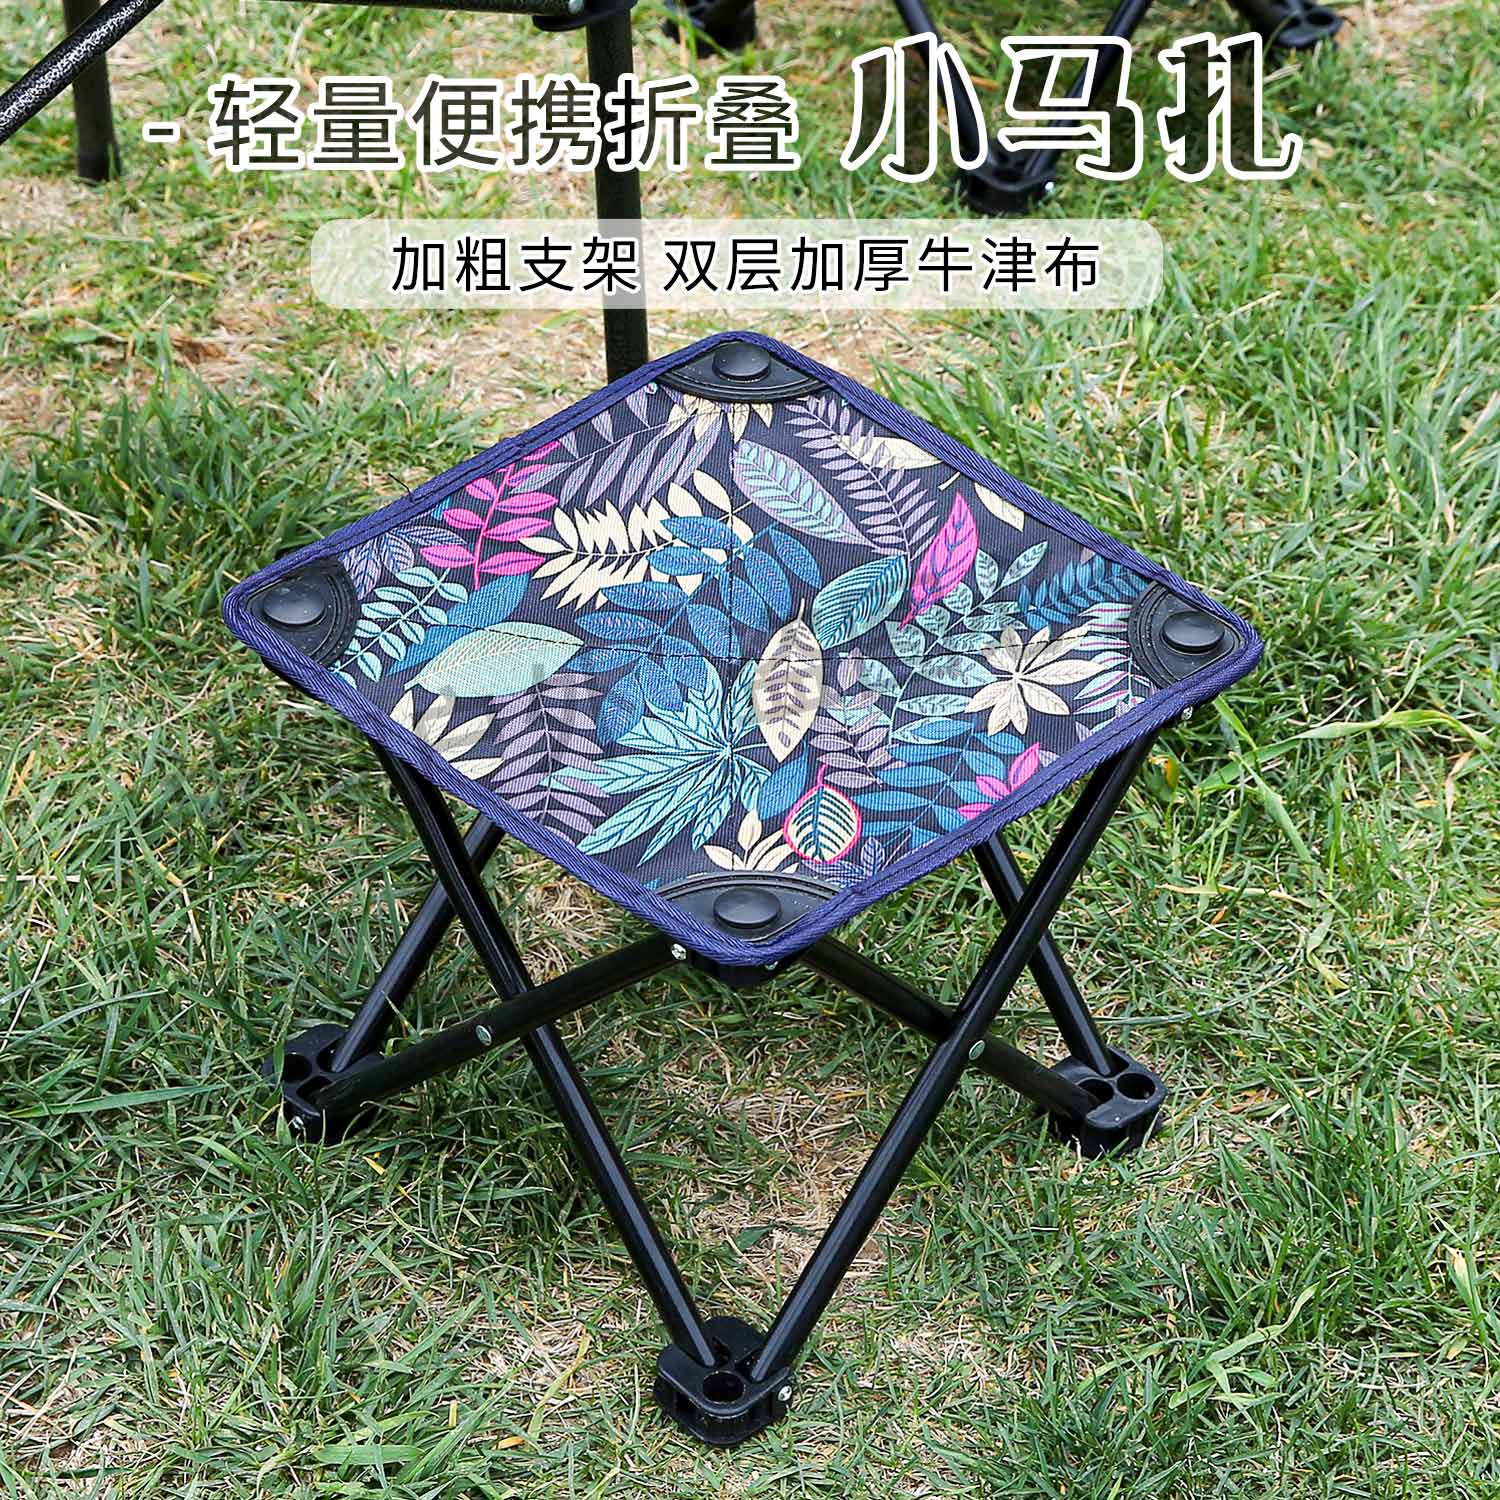 【旅彻】超轻马扎户外折叠凳子折叠椅便携露营椅钓鱼椅旅行小凳子